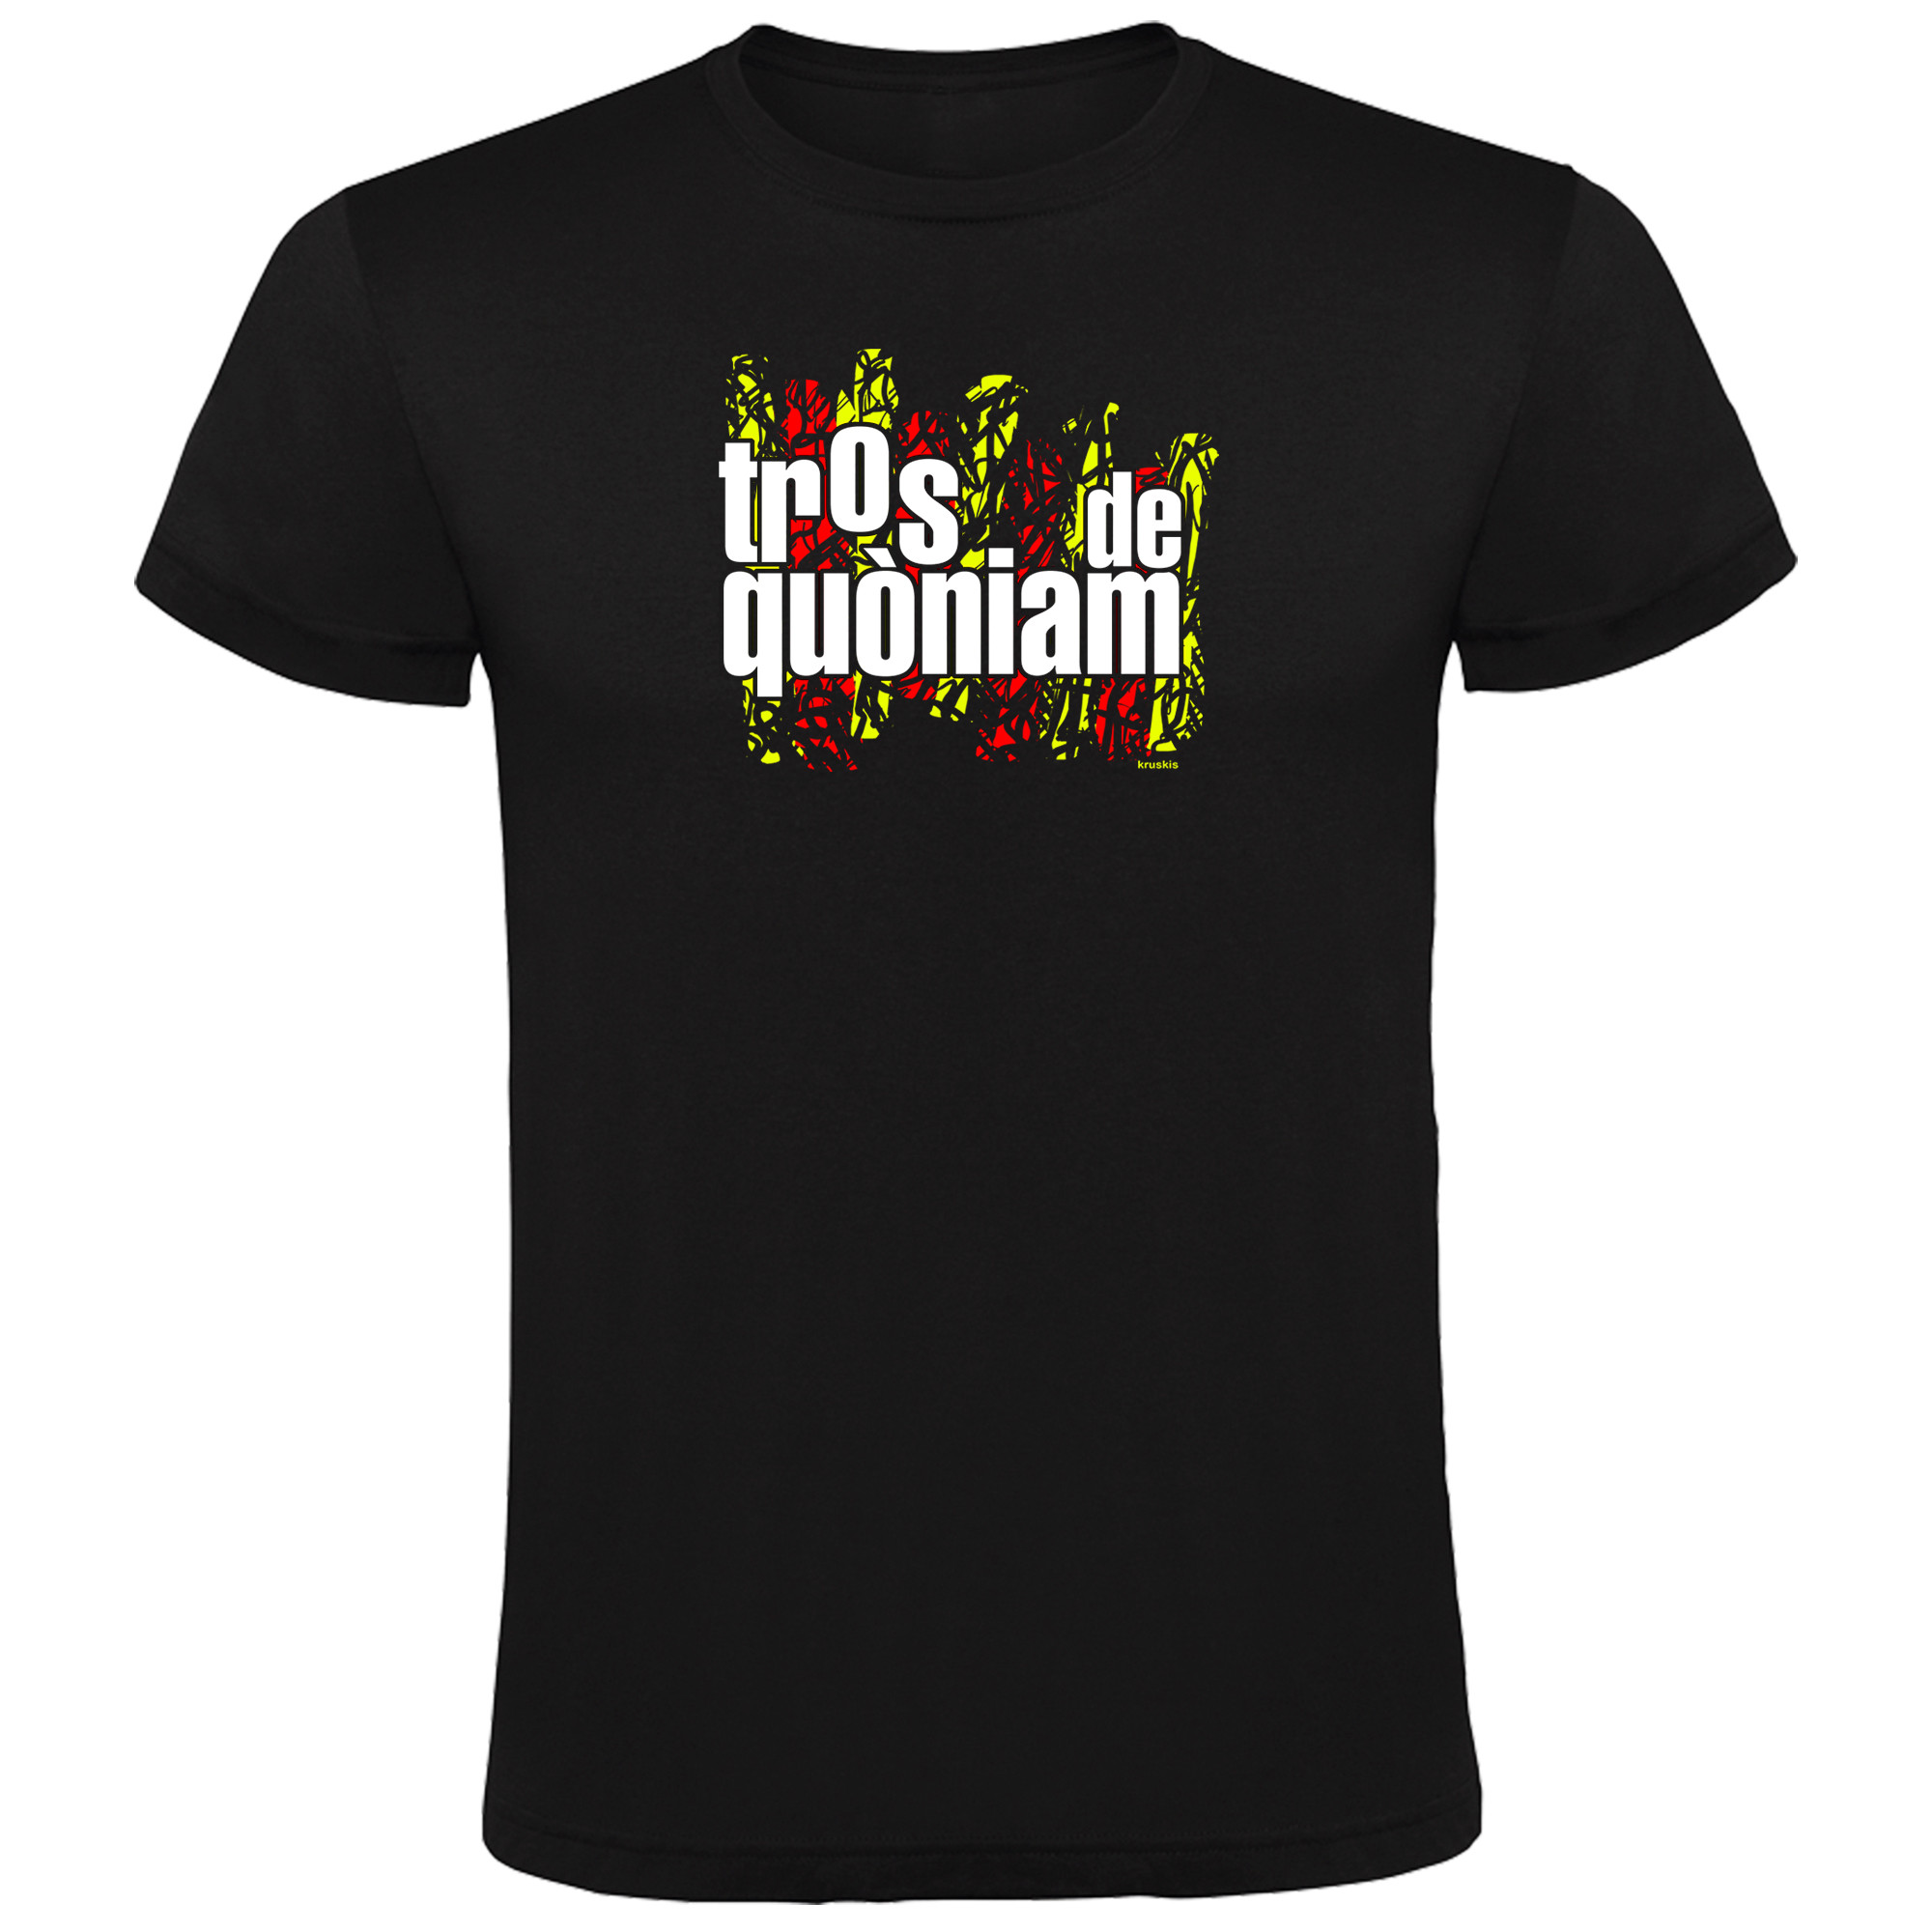 T Shirt Catalogna Tros de Quoniam Manica Corta Uomo